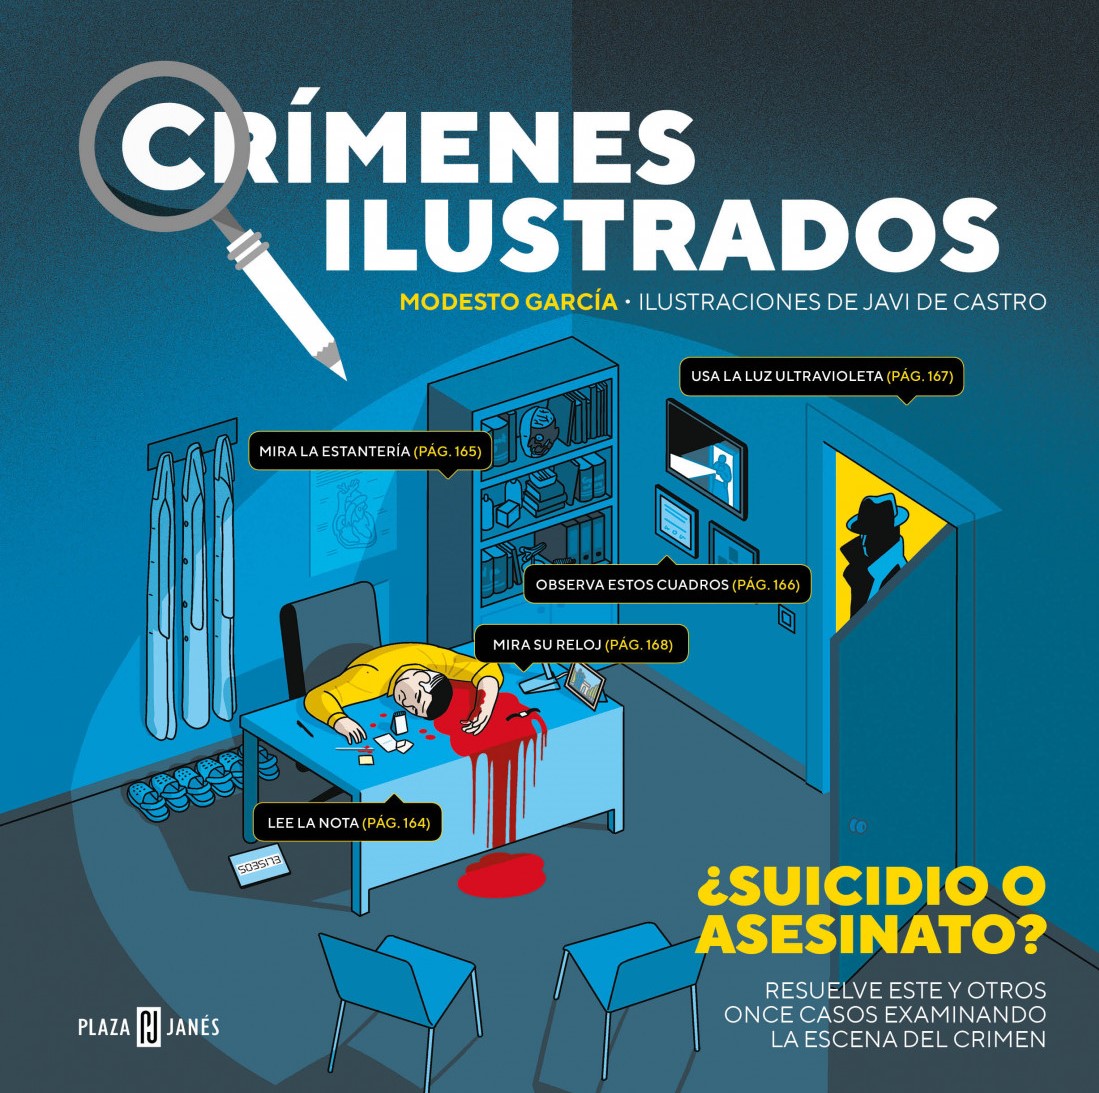 Crímenes ilustrados